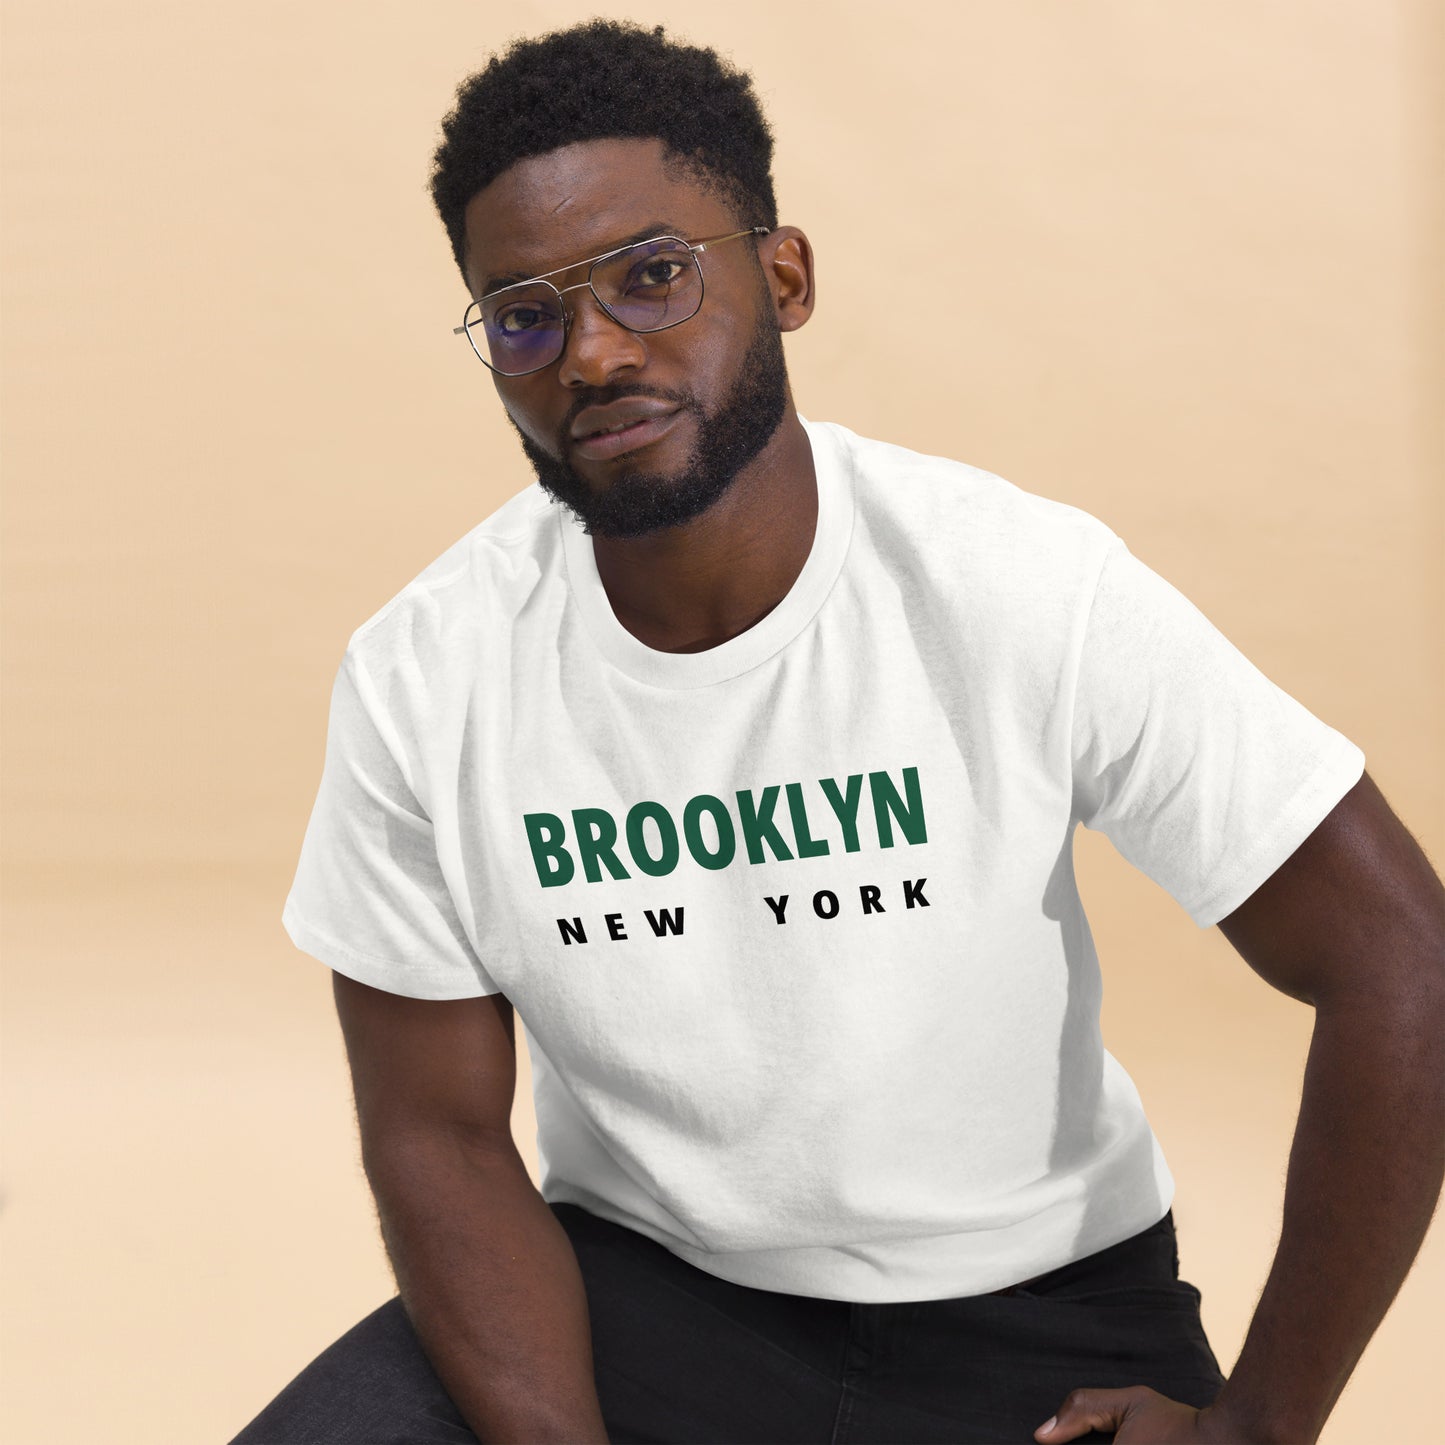 men tshirts - tshirts - shirts - brooklyn - newyork - tshirts - active - urban - shopping